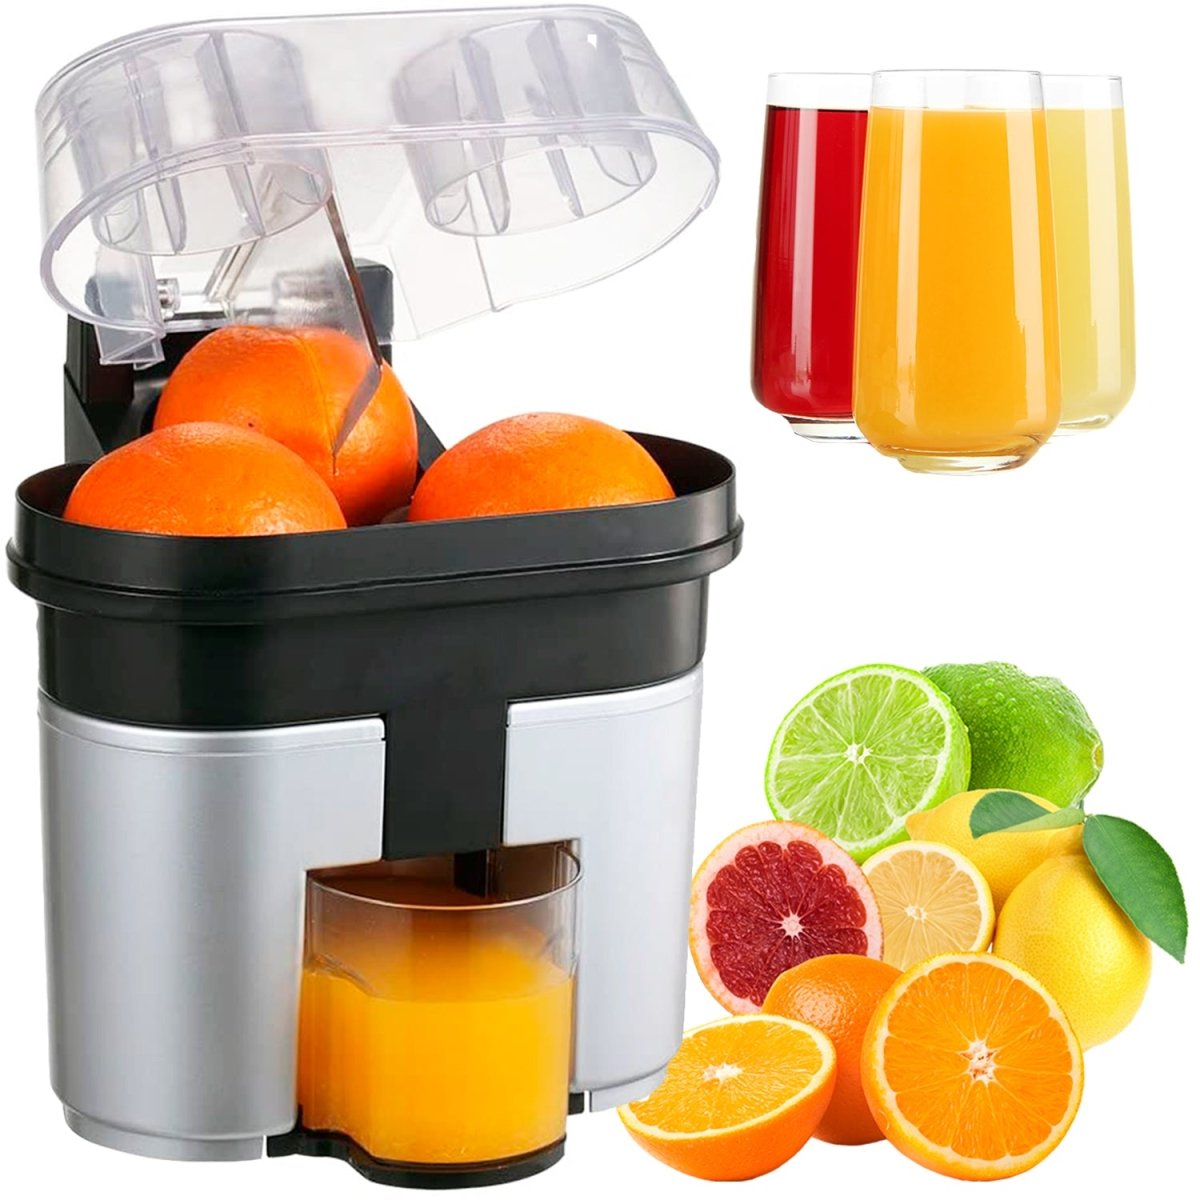 http://movilcom.com/cdn/shop/products/exprimidor-naranjas-profesional-doble-esprimidores-electrico-de-naranja-maquina-de-zumo-de-naranja-exprimidor-electrico-90w-mod01-946356_1200x1200.jpg?v=1643226653